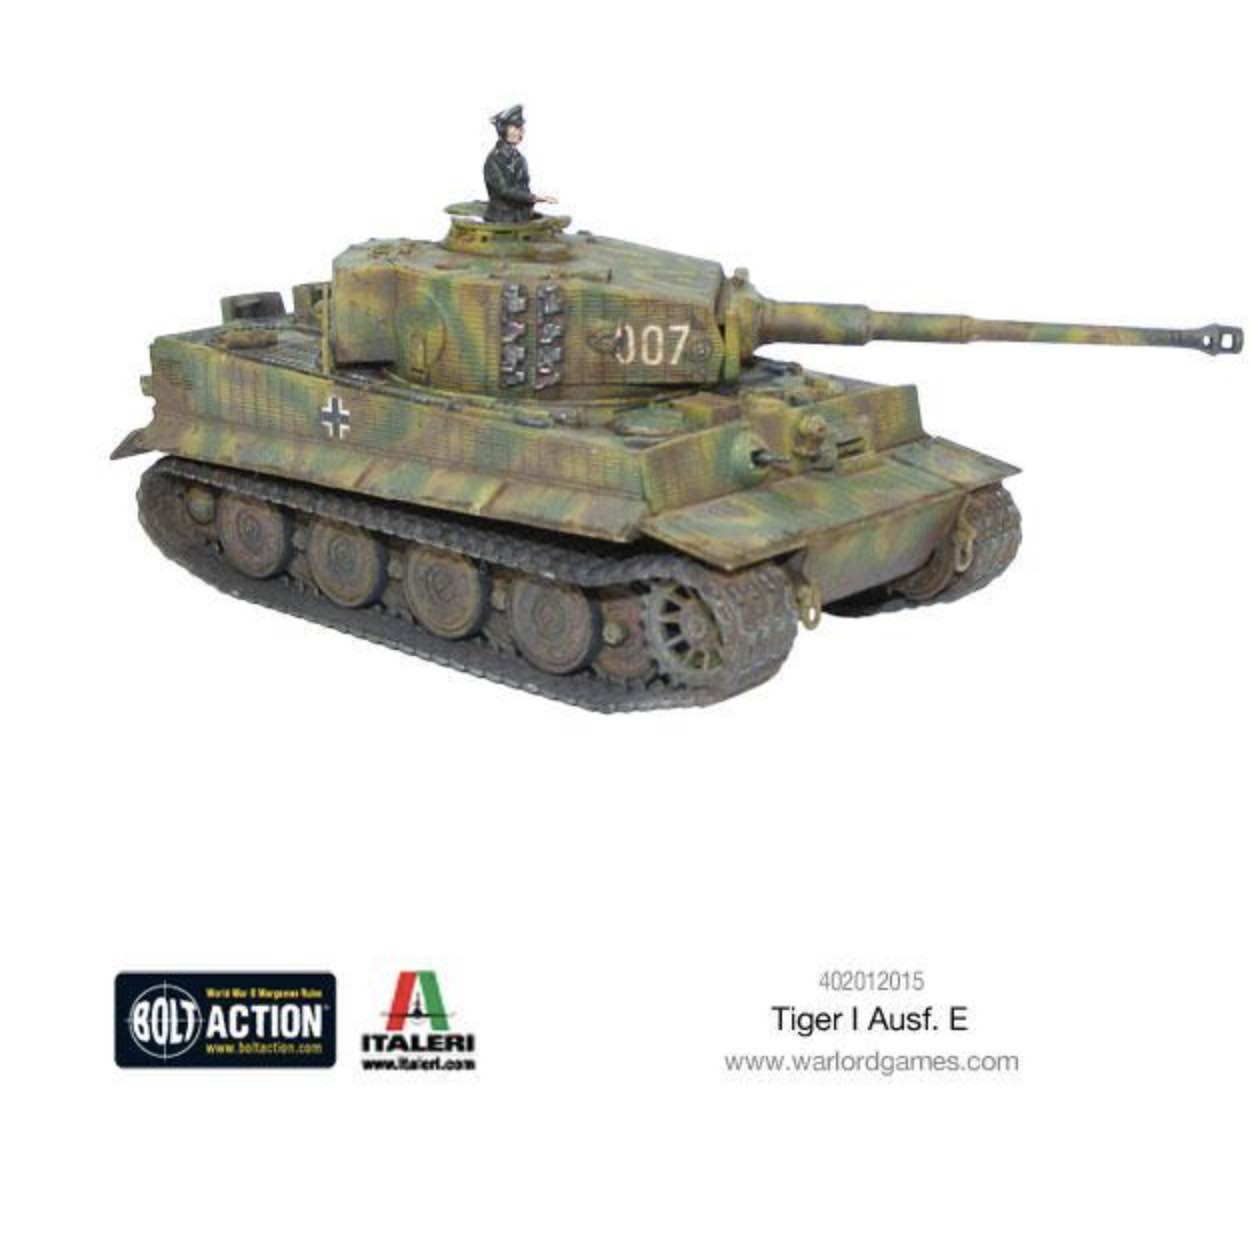 402012015 tiger I ausf E model_1